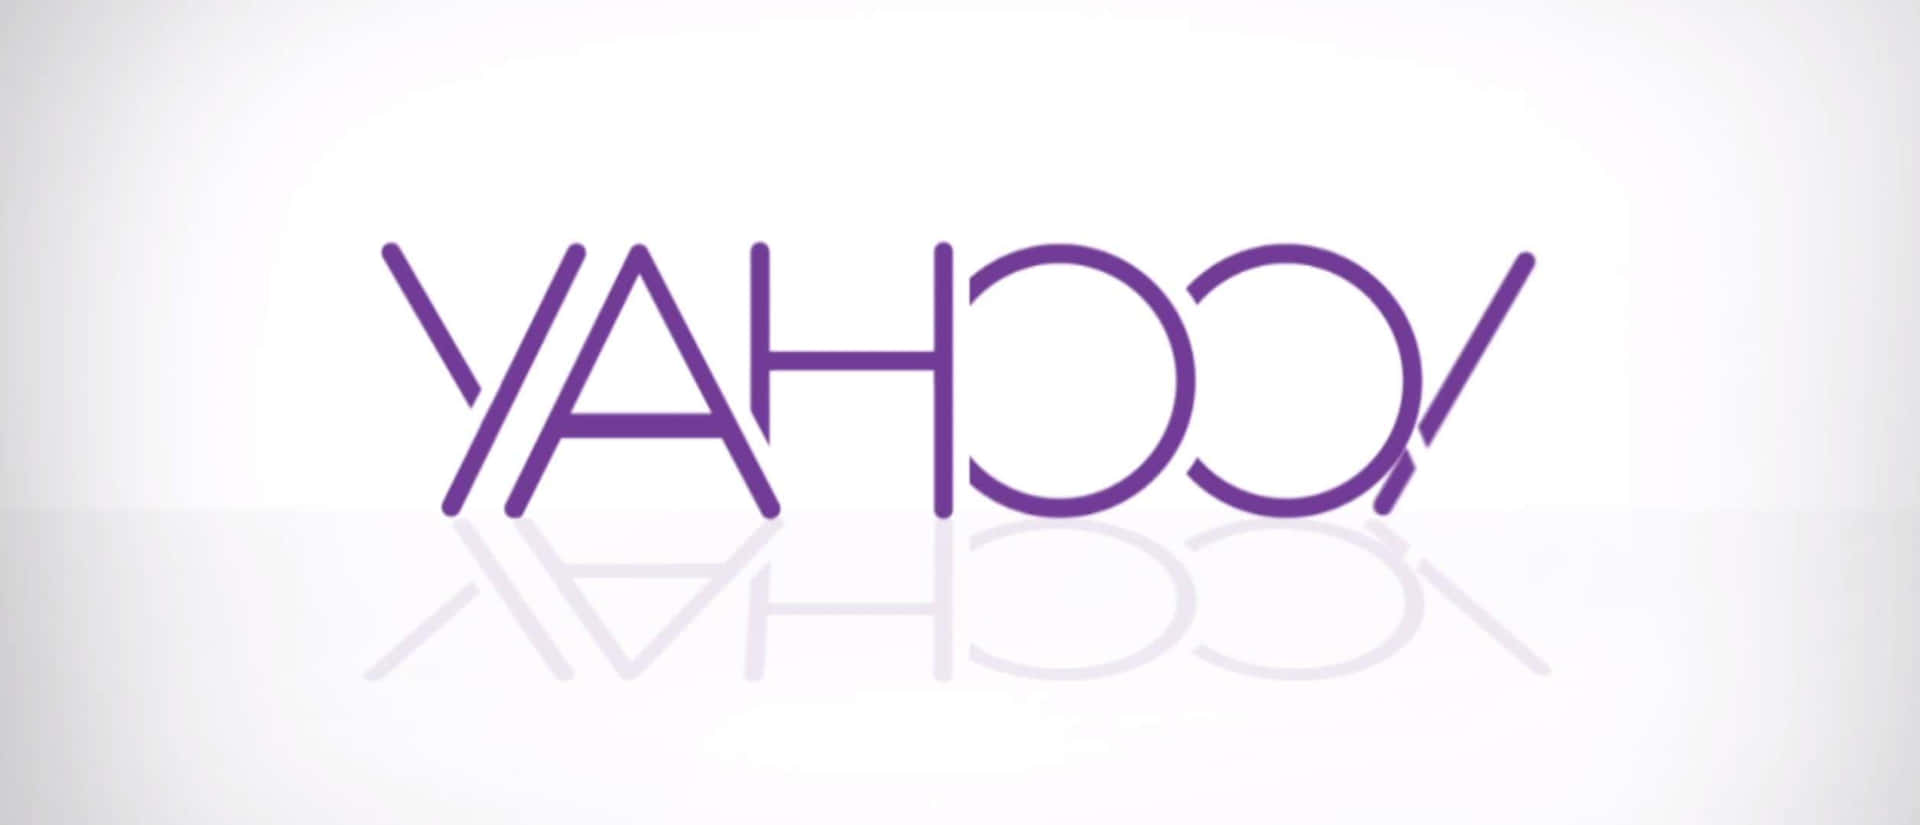 Desbloqueandoo Poder Da Web Com O Yahoo.